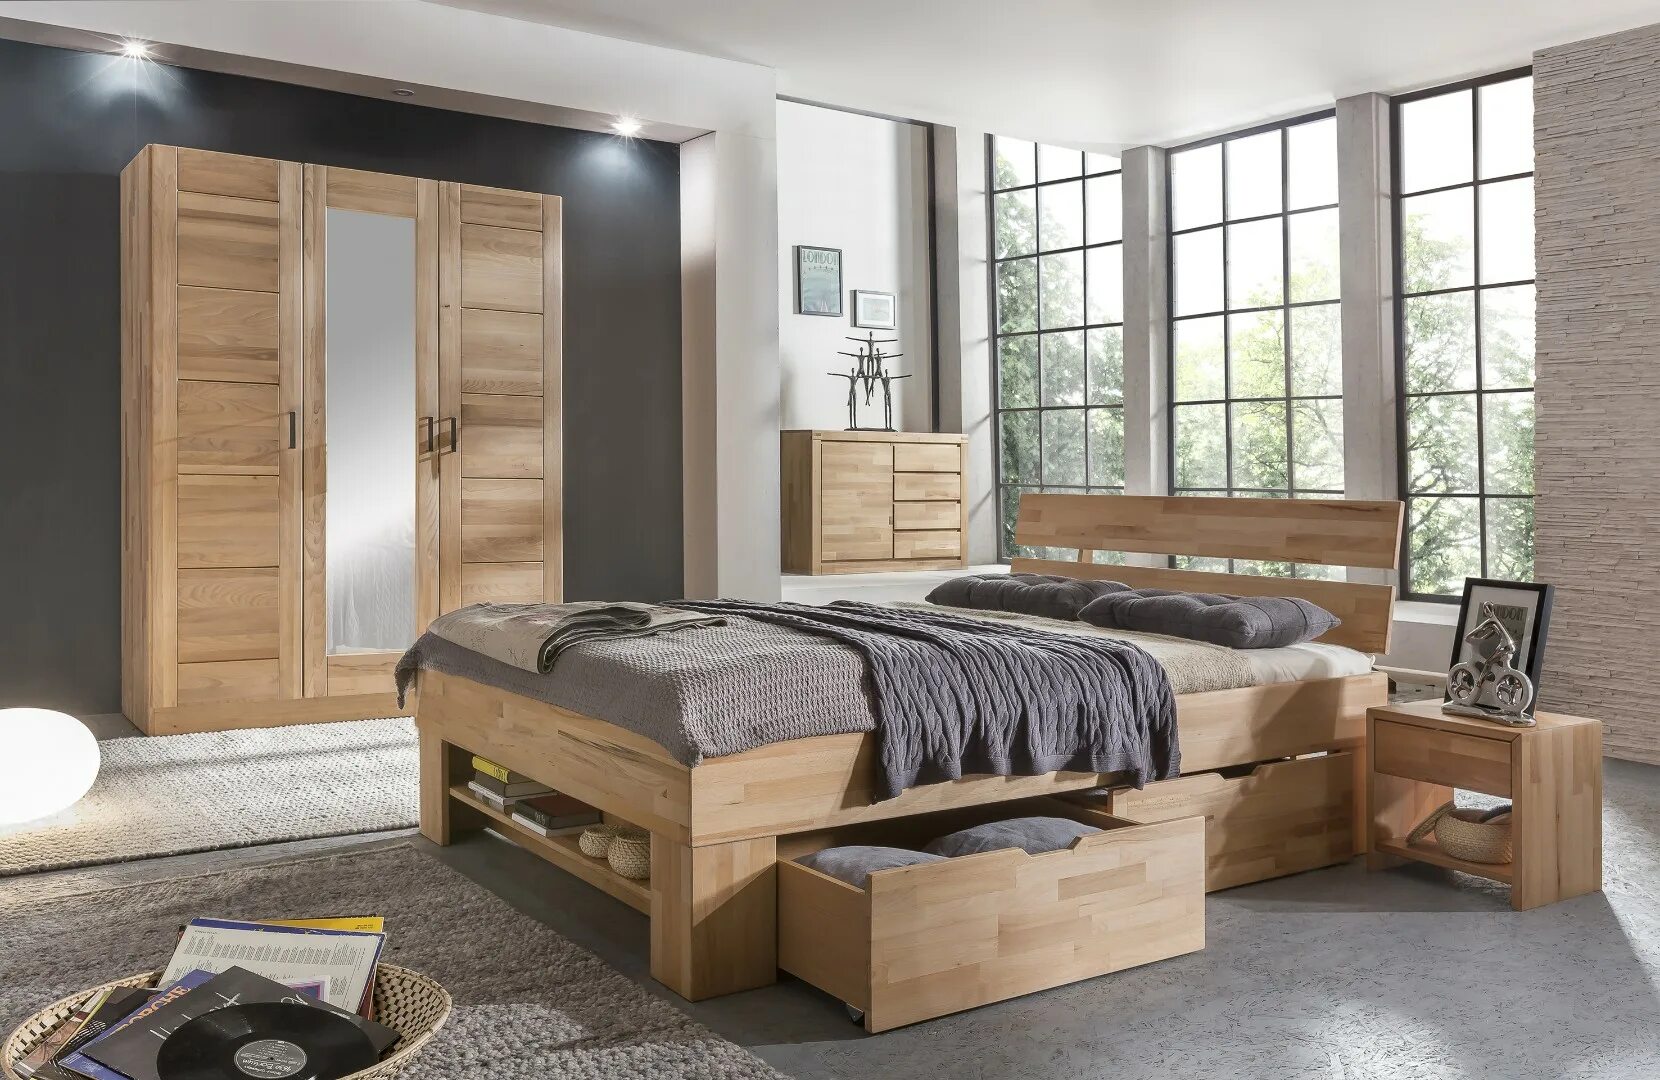 Спальня мебель дерево. Современная деревянная мебель. Спальный гарнитур из натурального дерева. Спальня с деревянной мебелью. Мебель под дерево для спальни.